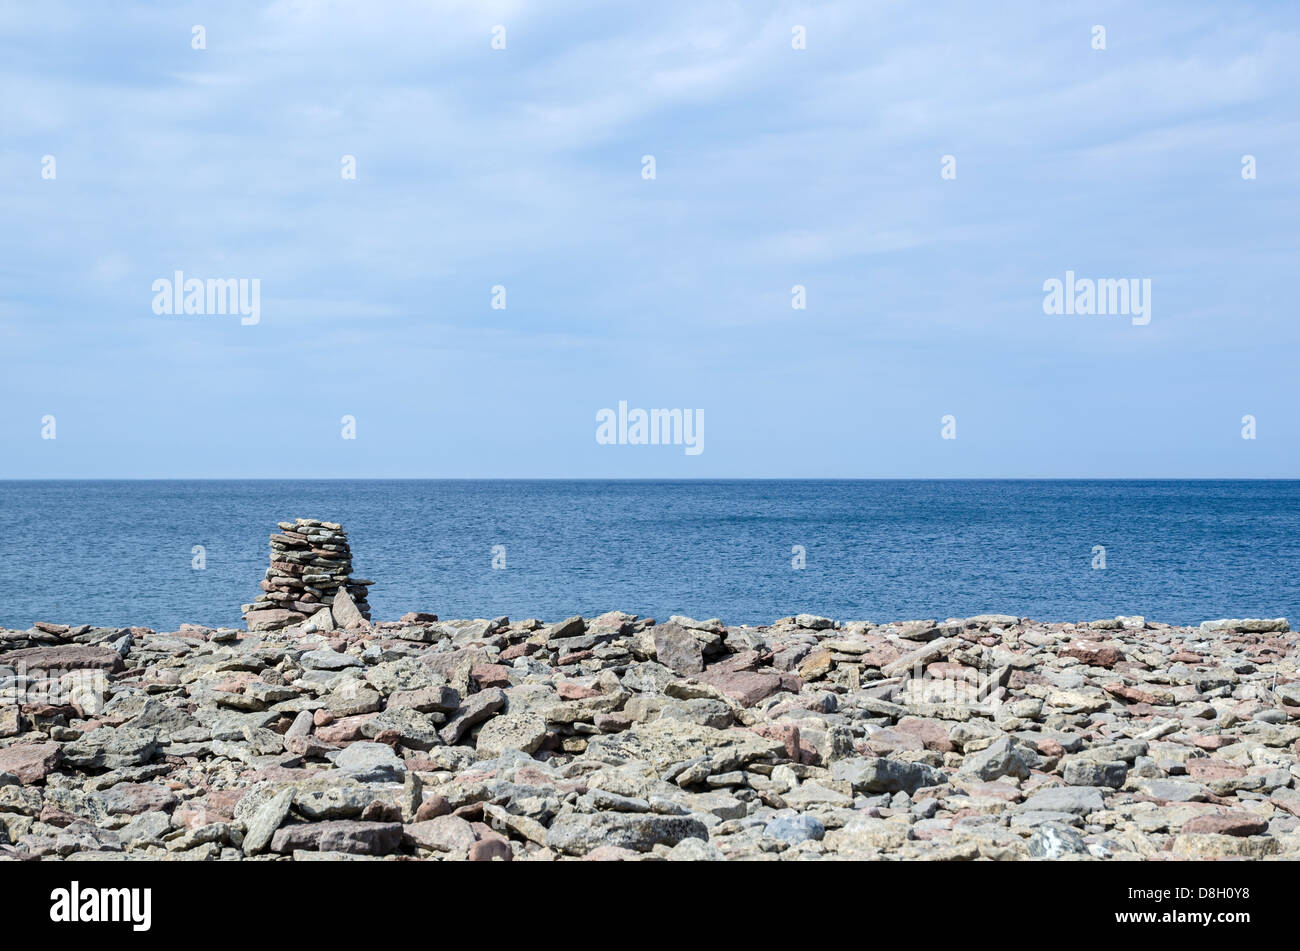 Pila di calcare sulla costa dell'isola Oland nel Mar Baltico. Foto Stock